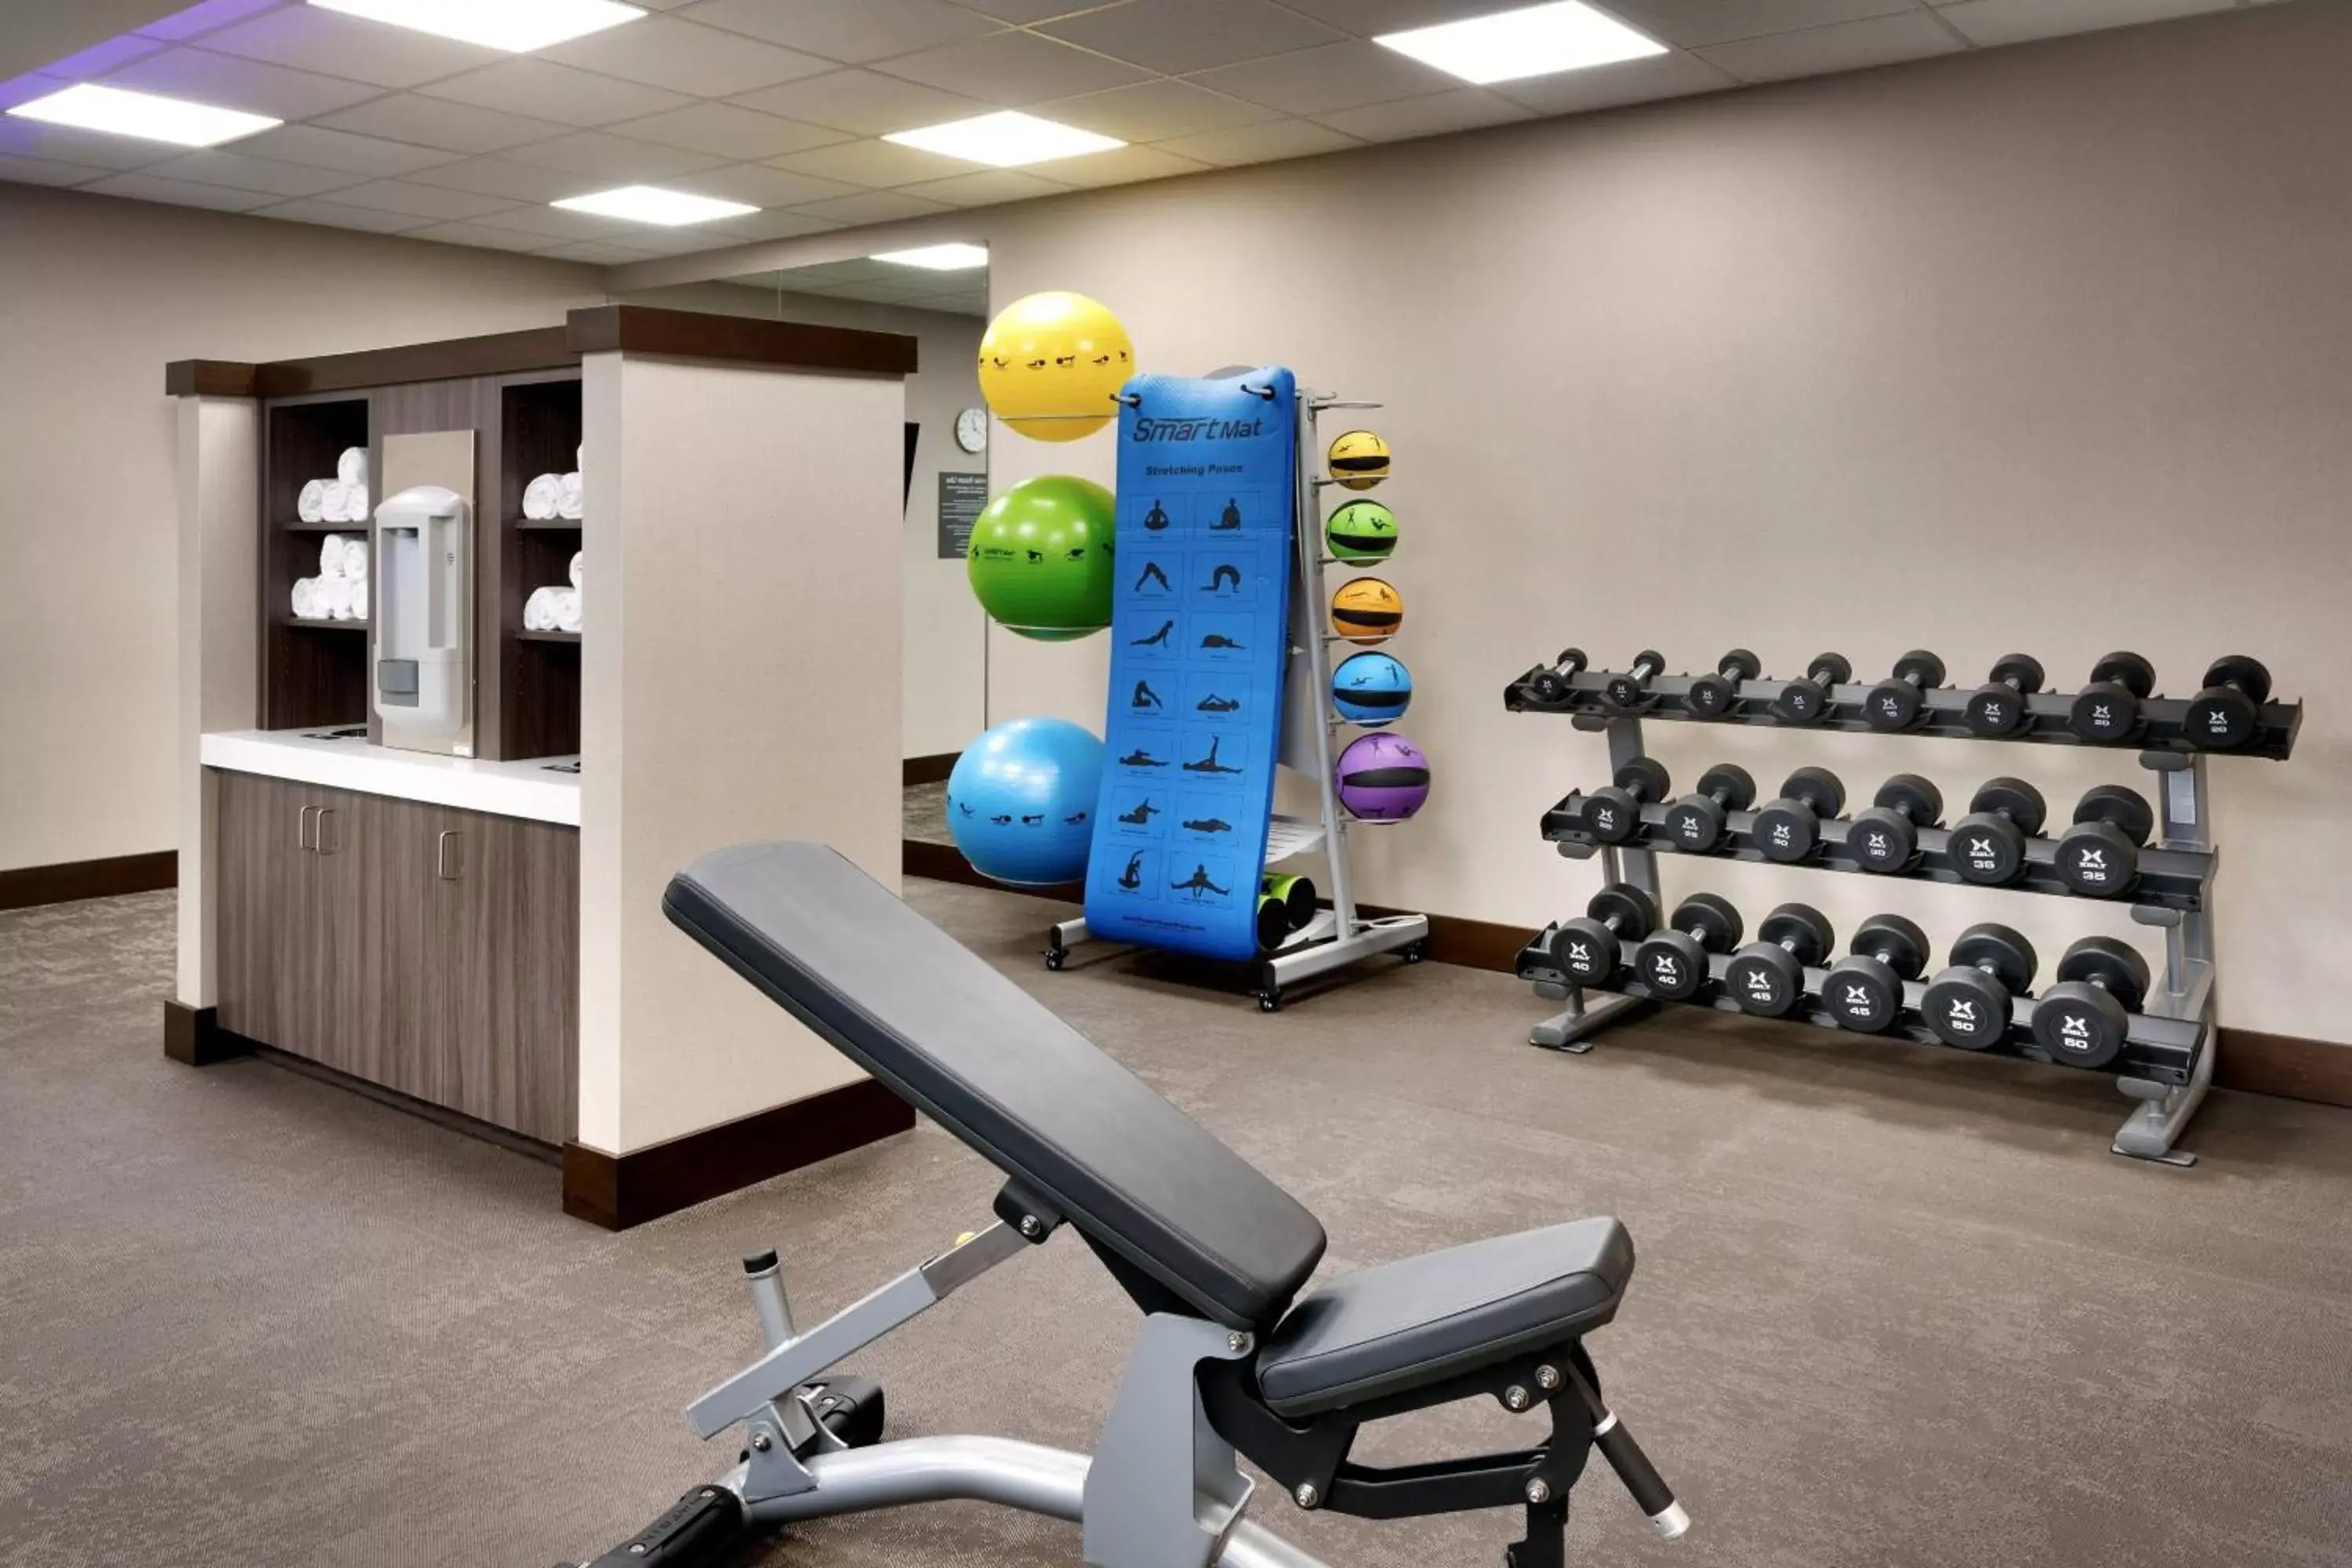 Fitness centre/facilities, Fitness Center/Facilities in Residence Inn by Marriott La Quinta